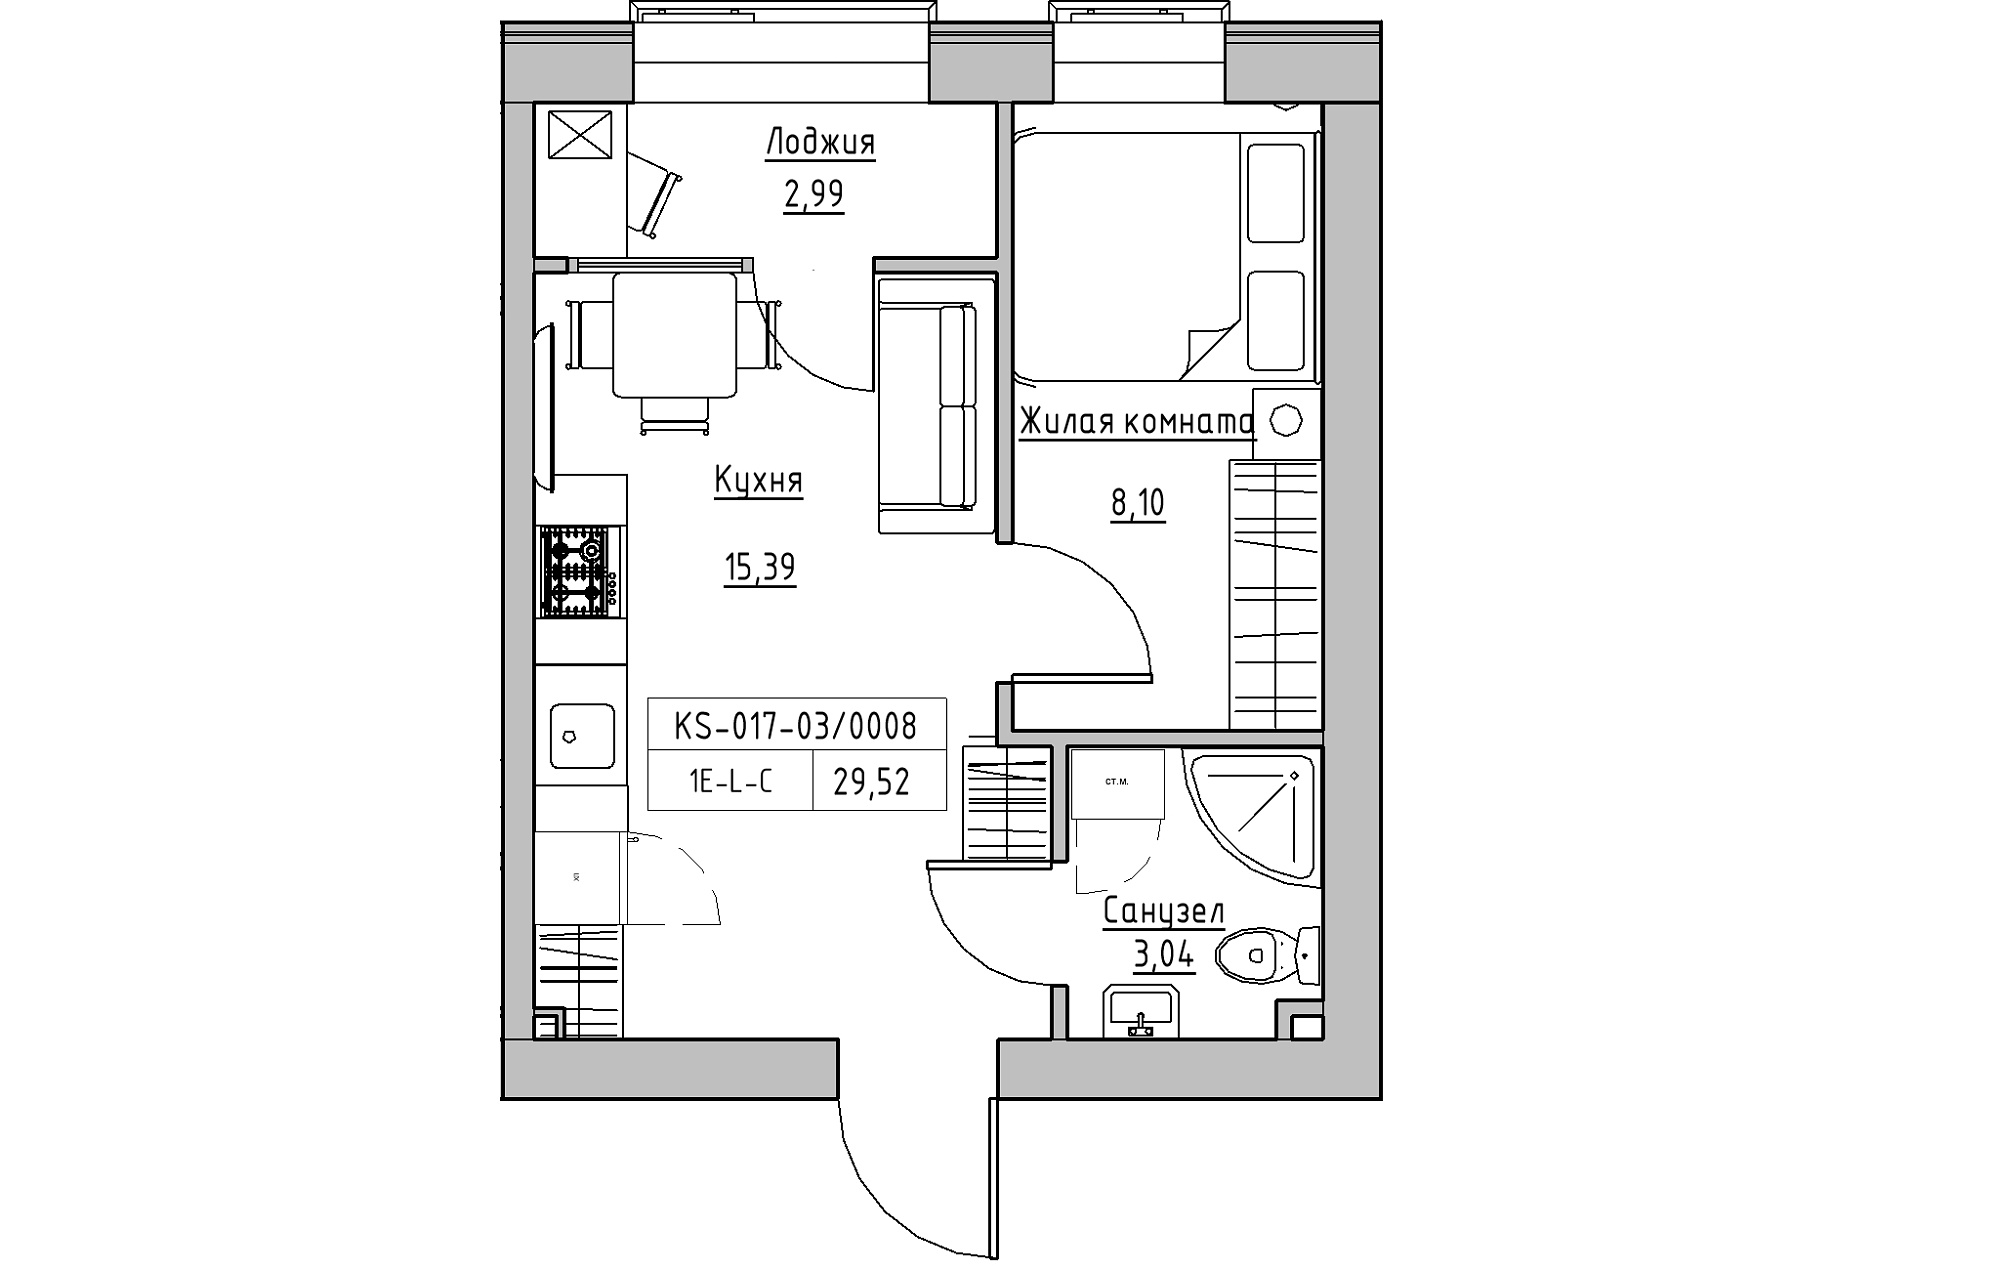 Планировка 1-к квартира площей 29.52м2, KS-017-03/0008.